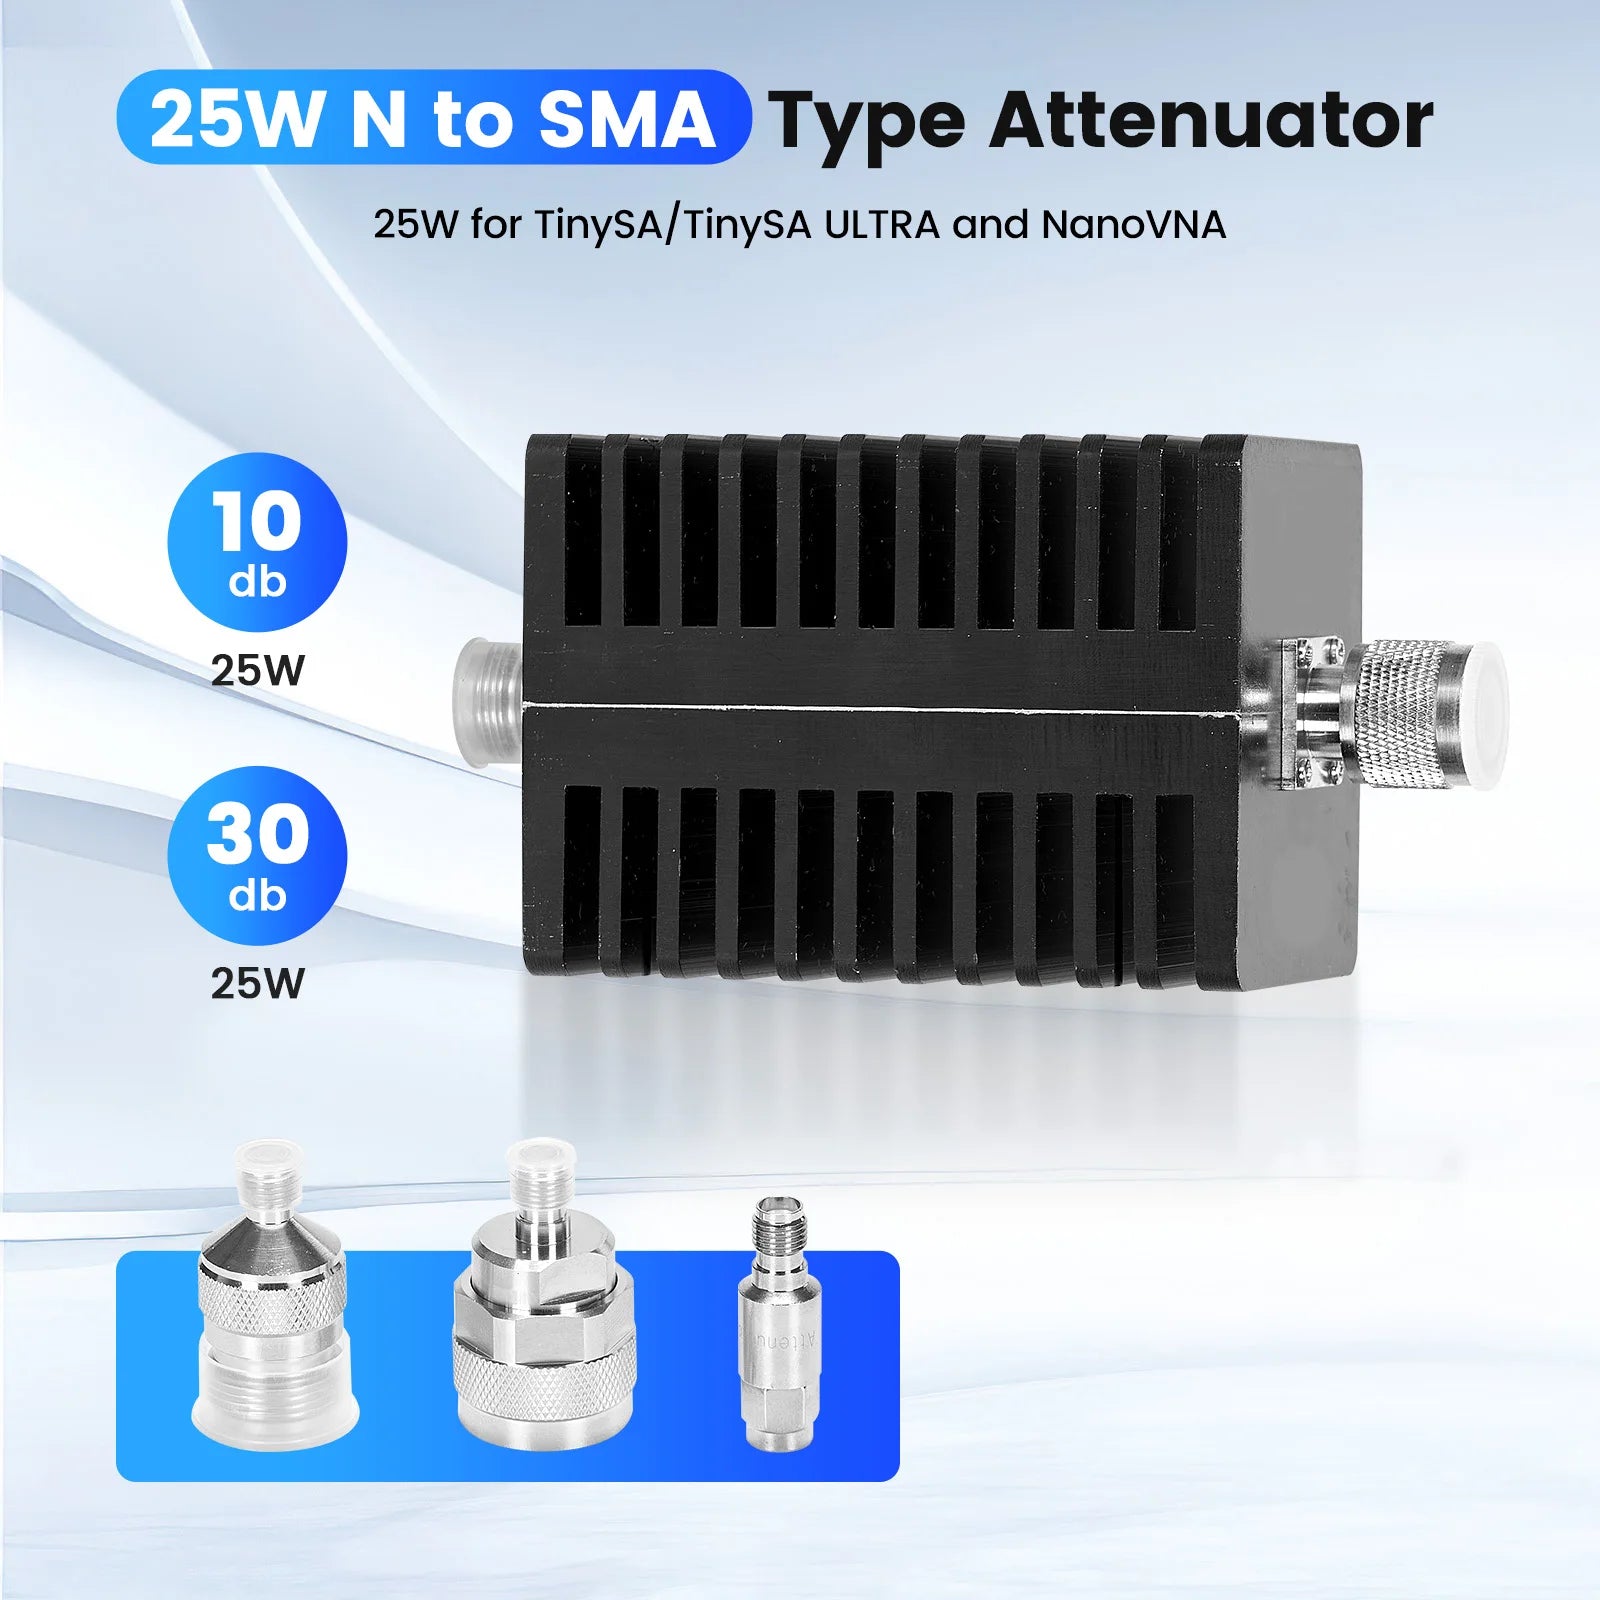 25W Attenuator for TinySA Ultra Spectrum Analyzer